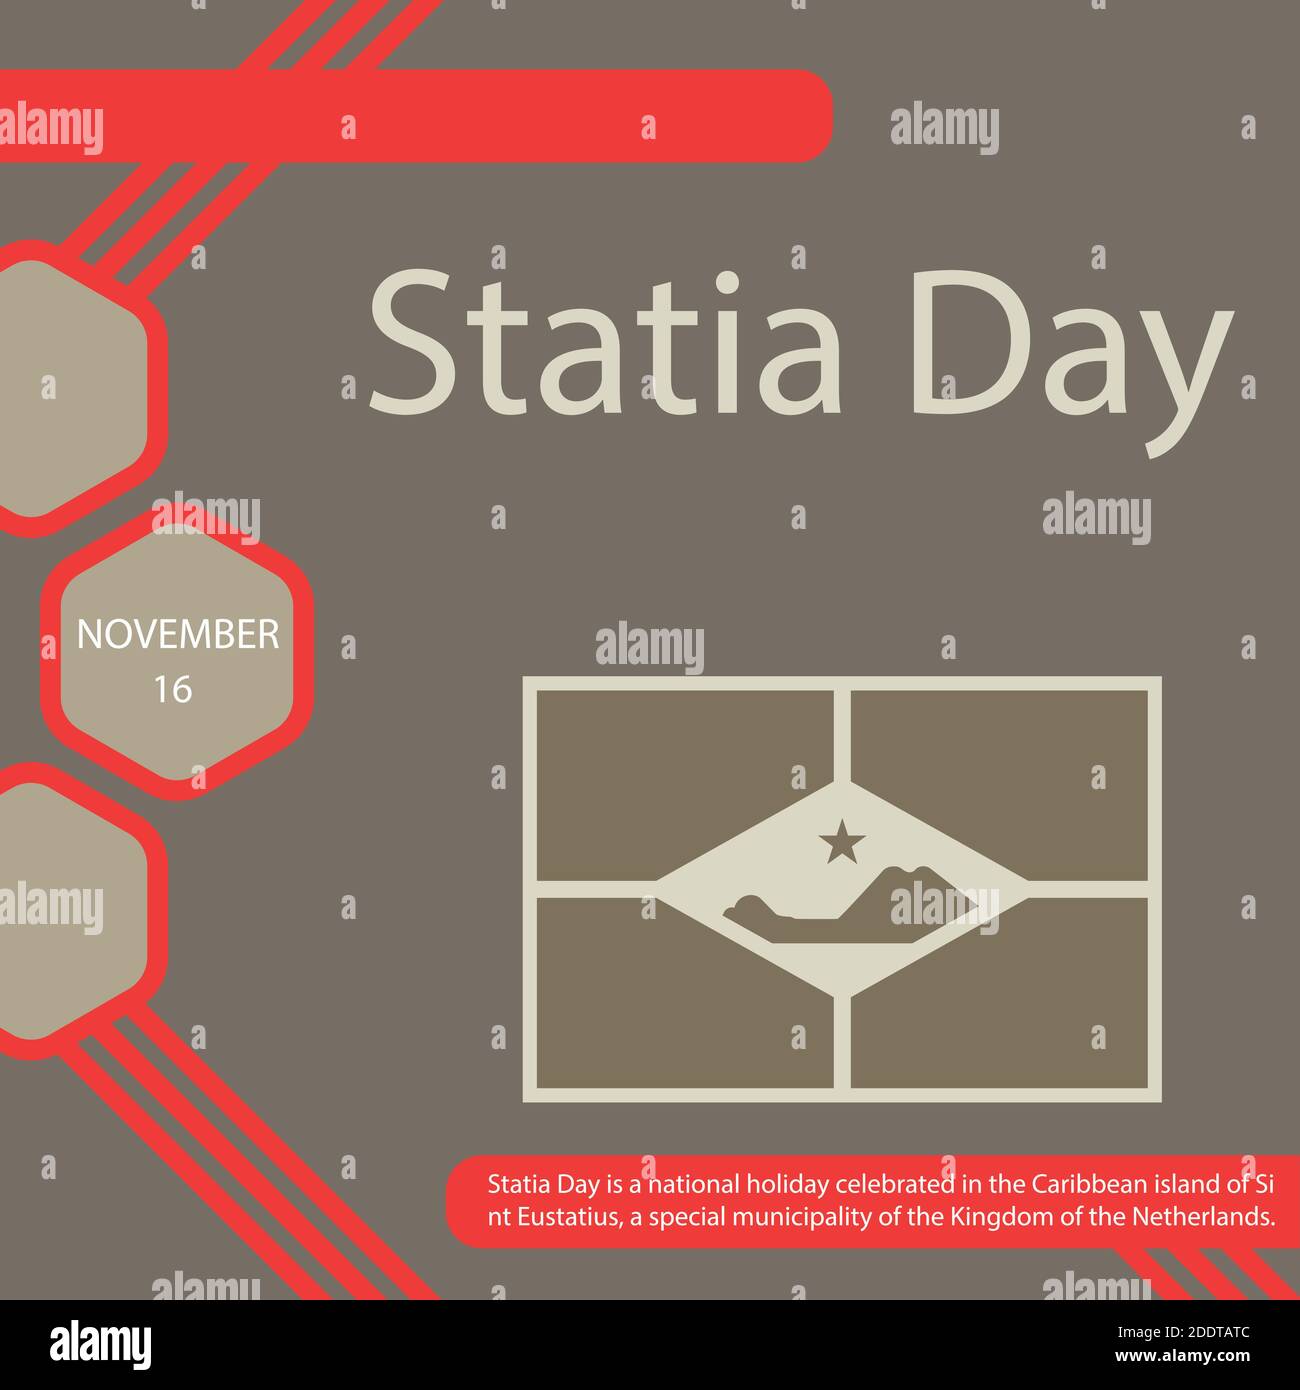 La Journée Statia est une fête nationale célébrée dans l'île des Caraïbes de Saint Eustache, une municipalité spéciale du Royaume des pays-Bas. Illustration de Vecteur